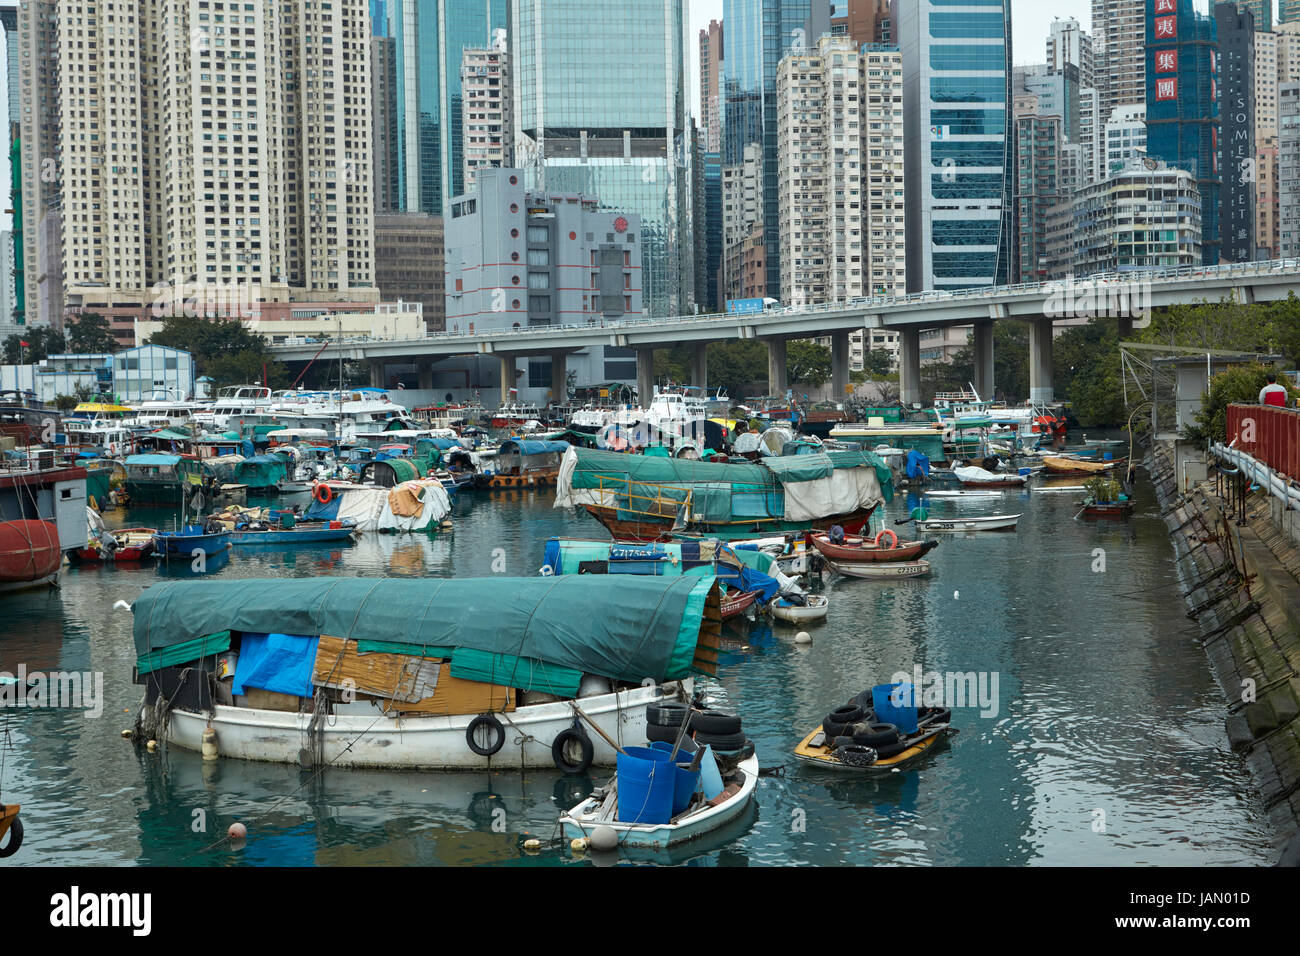 Boats at marina in Causeway Bay Typhoon Shelter, Causeway Bay, Hong Kong, China Stock Photo